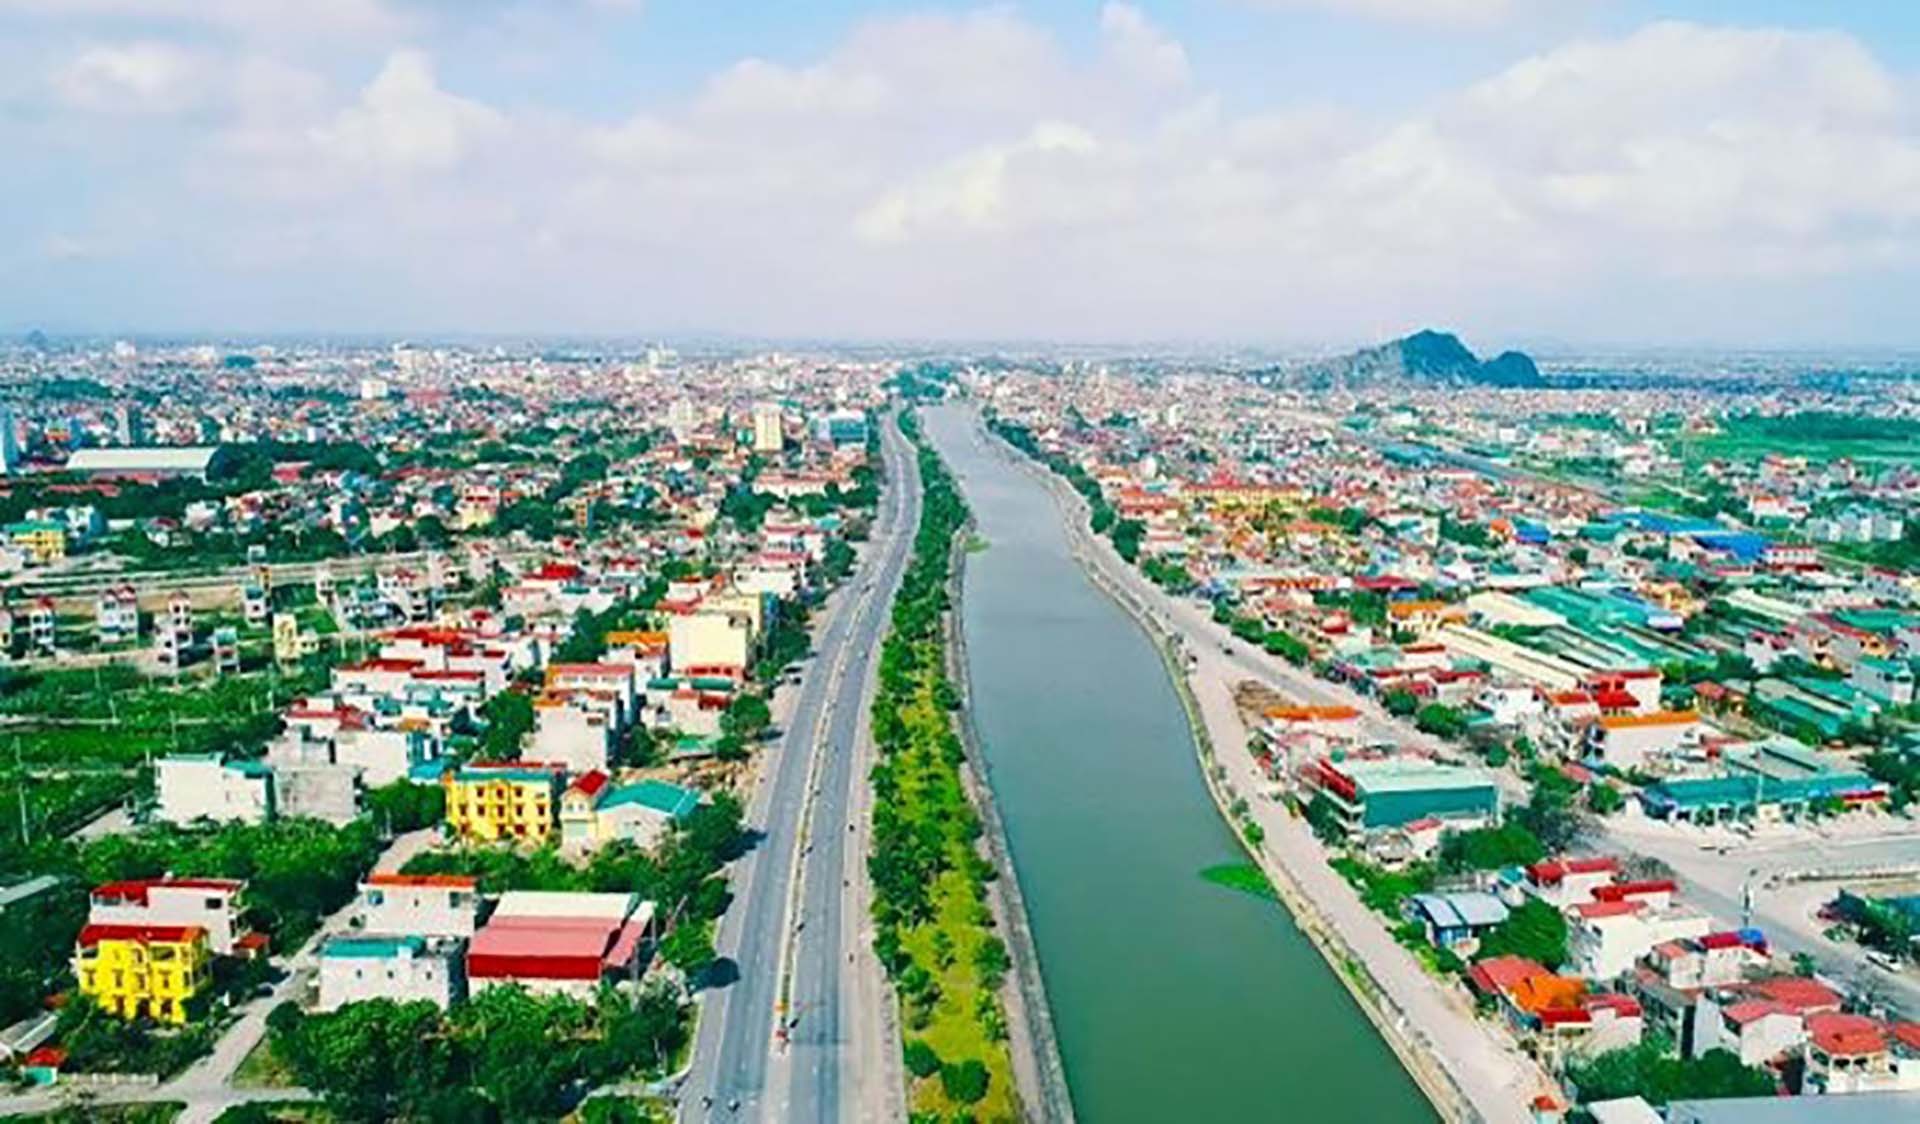 Công tác xây dựng và quản lý đô thị được thành phố Ninh Bình tập trung lãnh đạo, chỉ đạo quyết liệt.